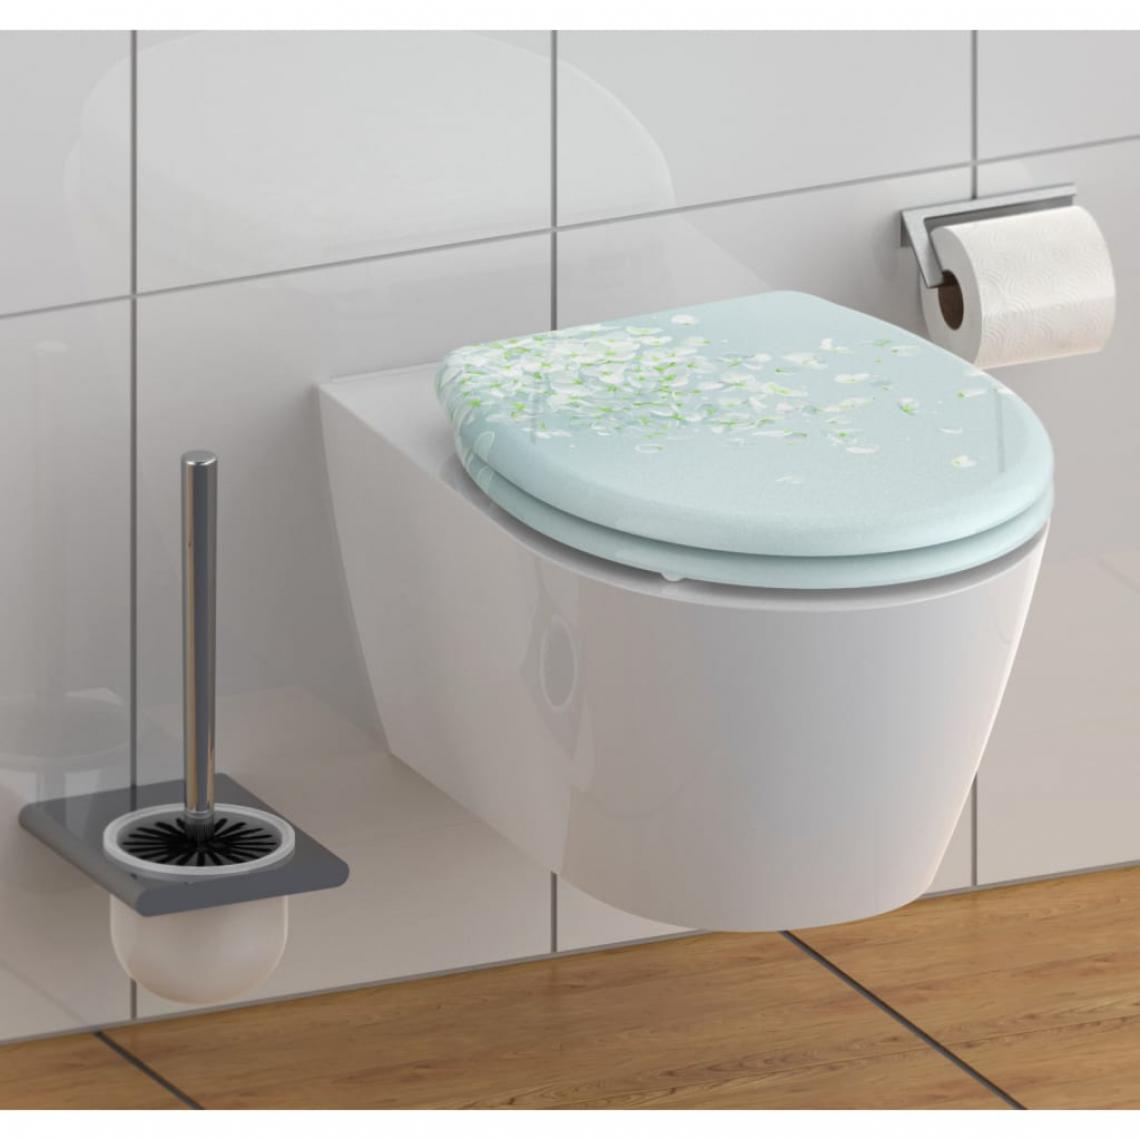 Schutte - SCHÜTTE Siège de toilette avec fermeture en douceur FLOWER IN THE WIND - Abattant WC